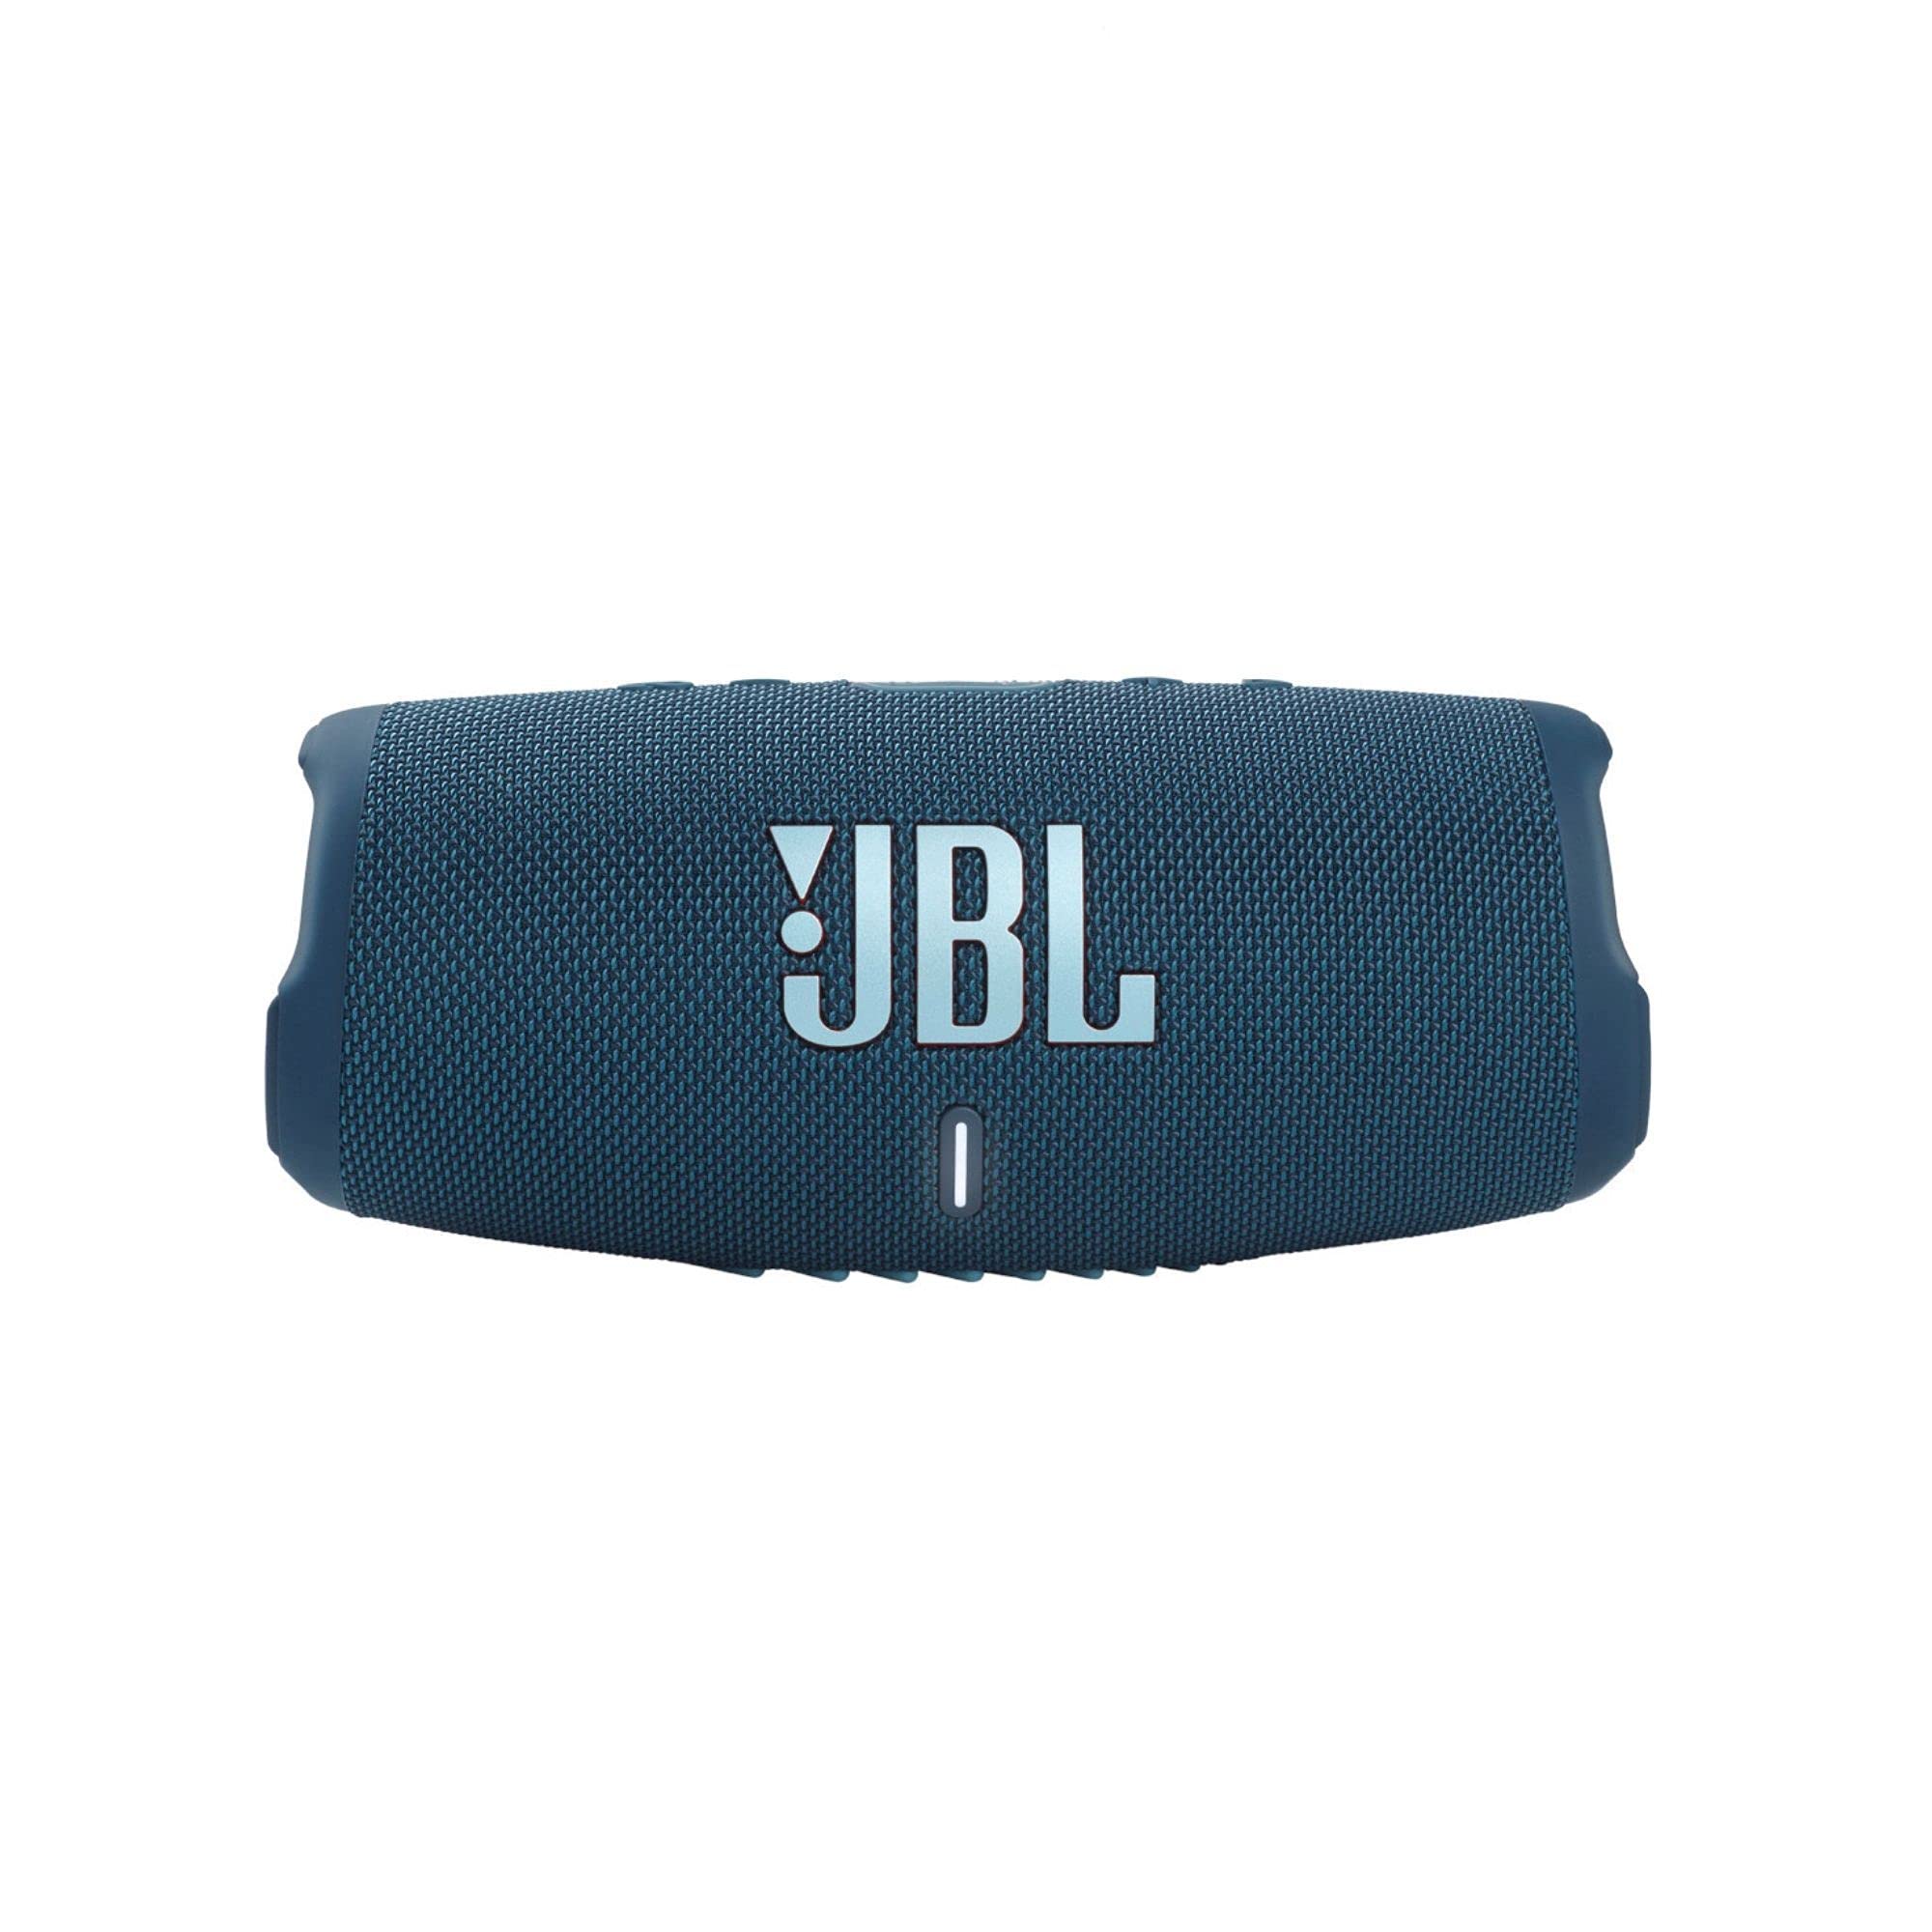 JBL Charge 5 - IP67 防水機能と USB 充電出力を備えたポータブル Bluetooth スピーカー - ブルー (リニューアル)